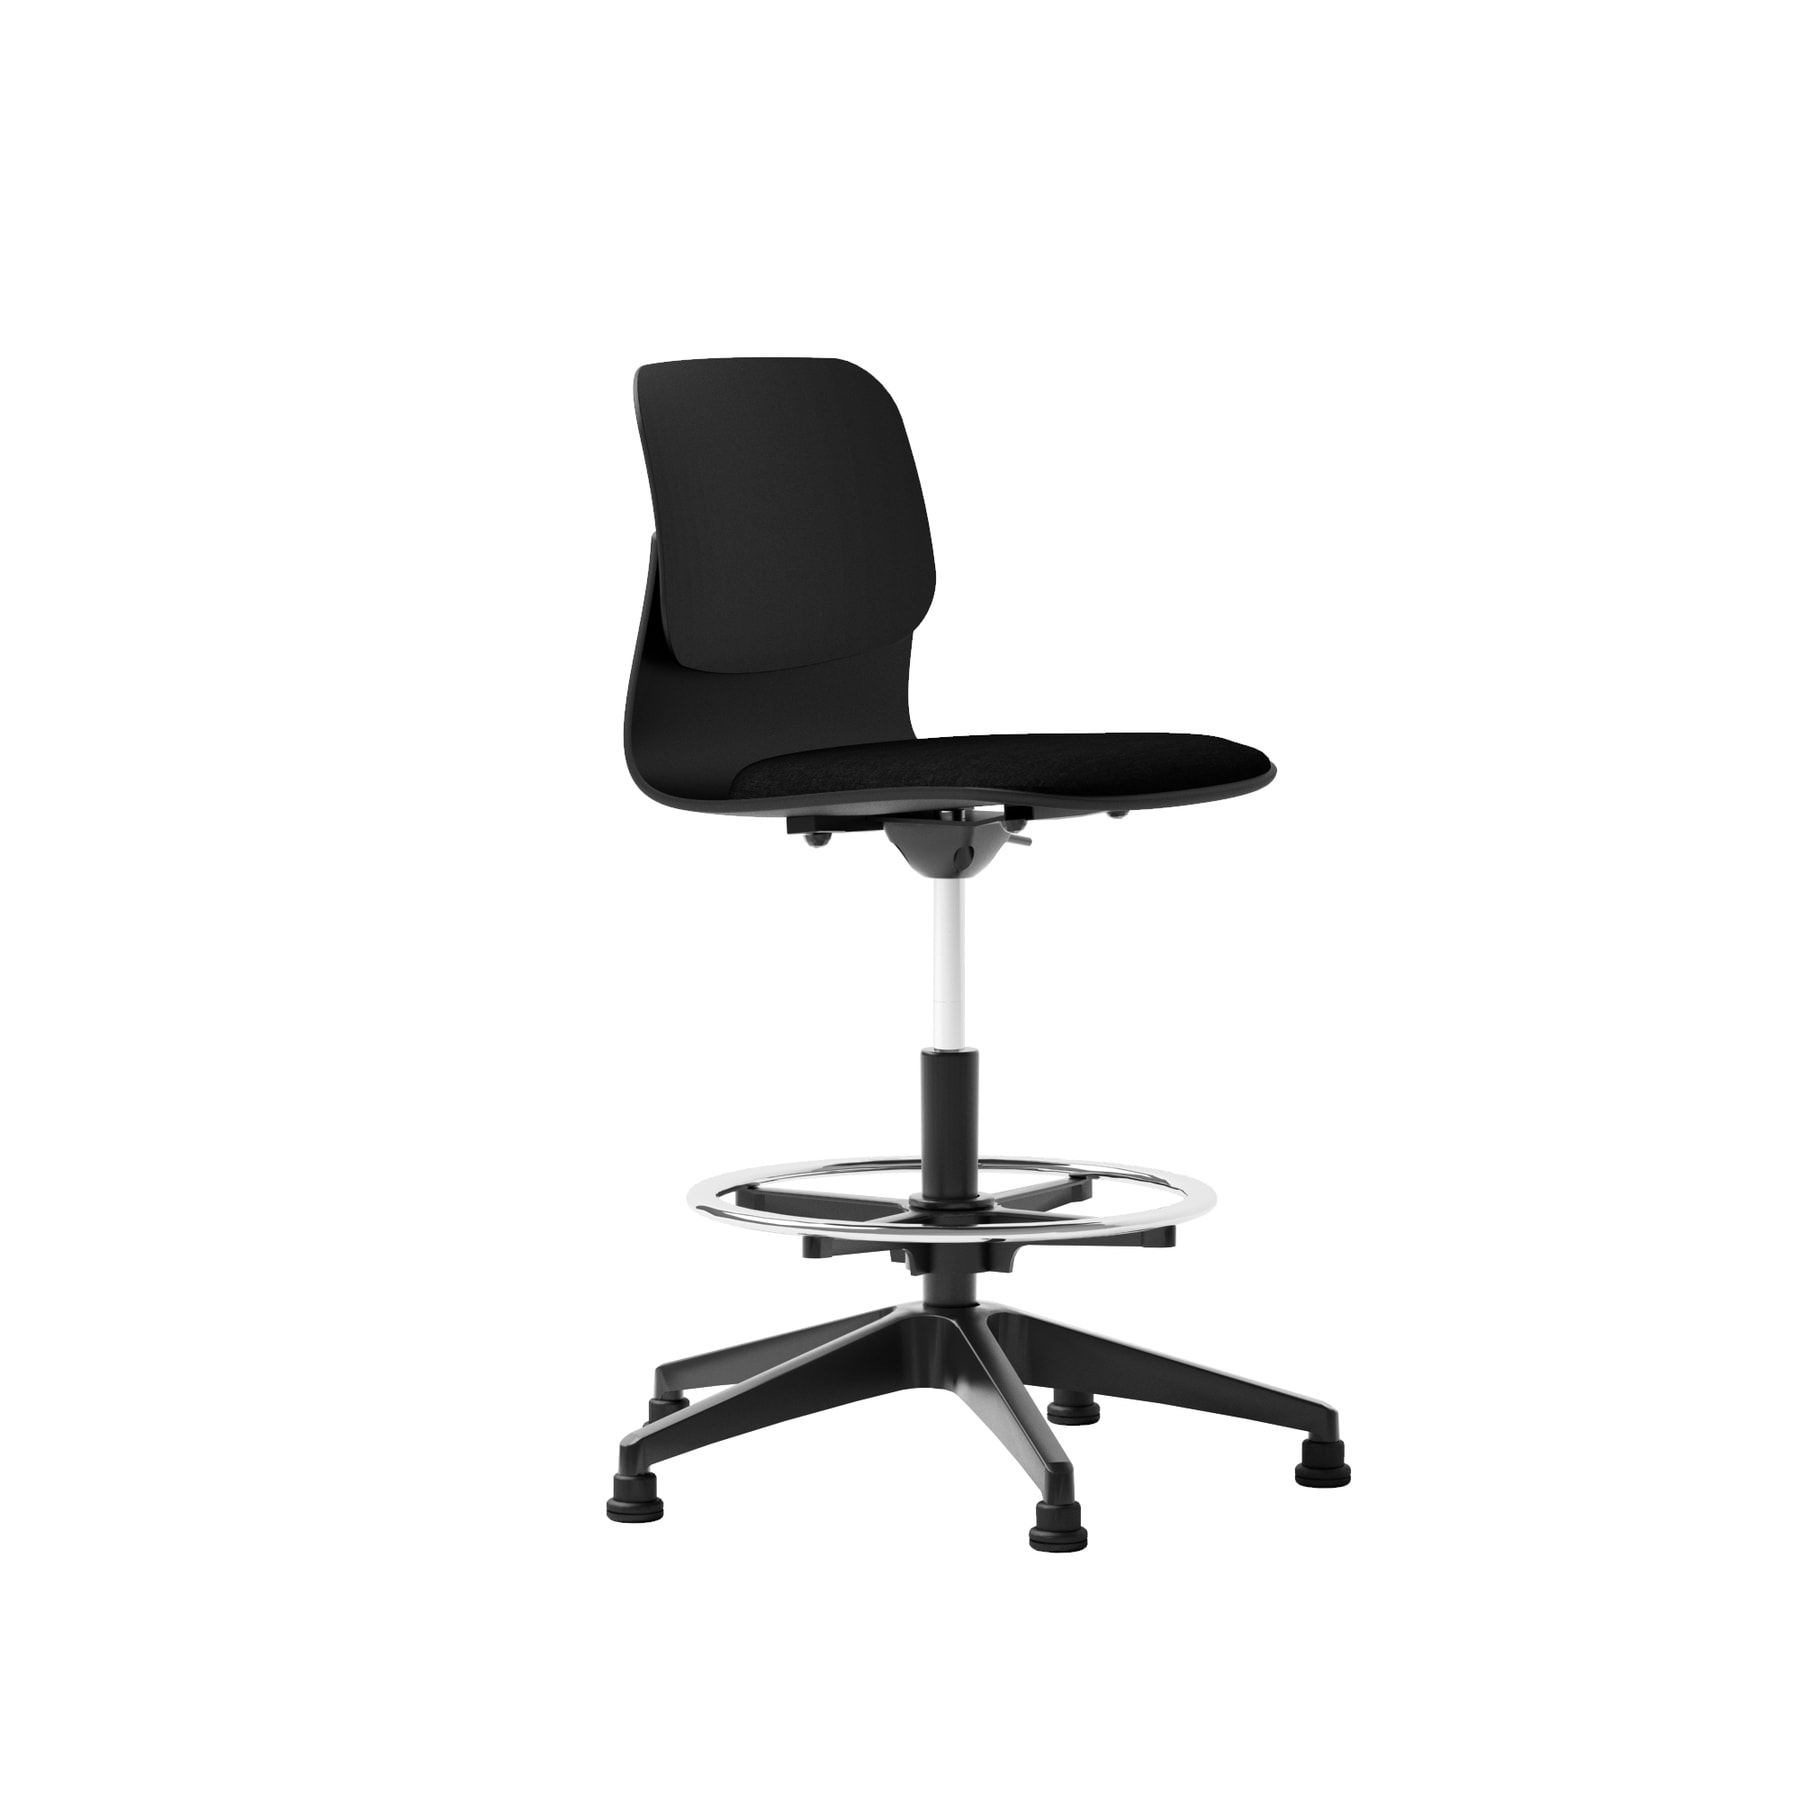 Chaise haute de bureau design noire avec repose-pieds